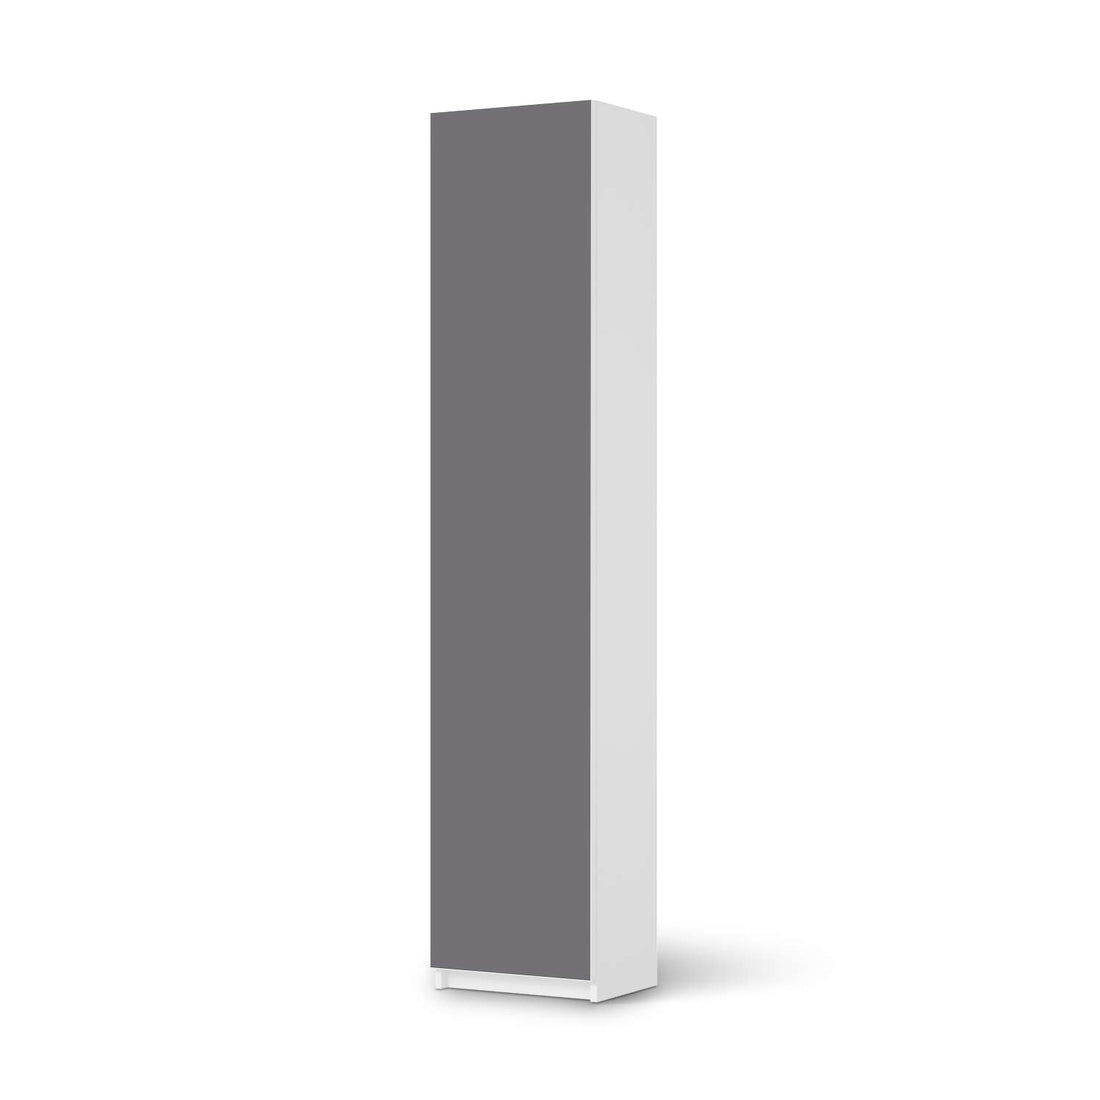 Klebefolie Grau Light - IKEA Pax Schrank 236 cm Höhe - 1 Tür - weiss